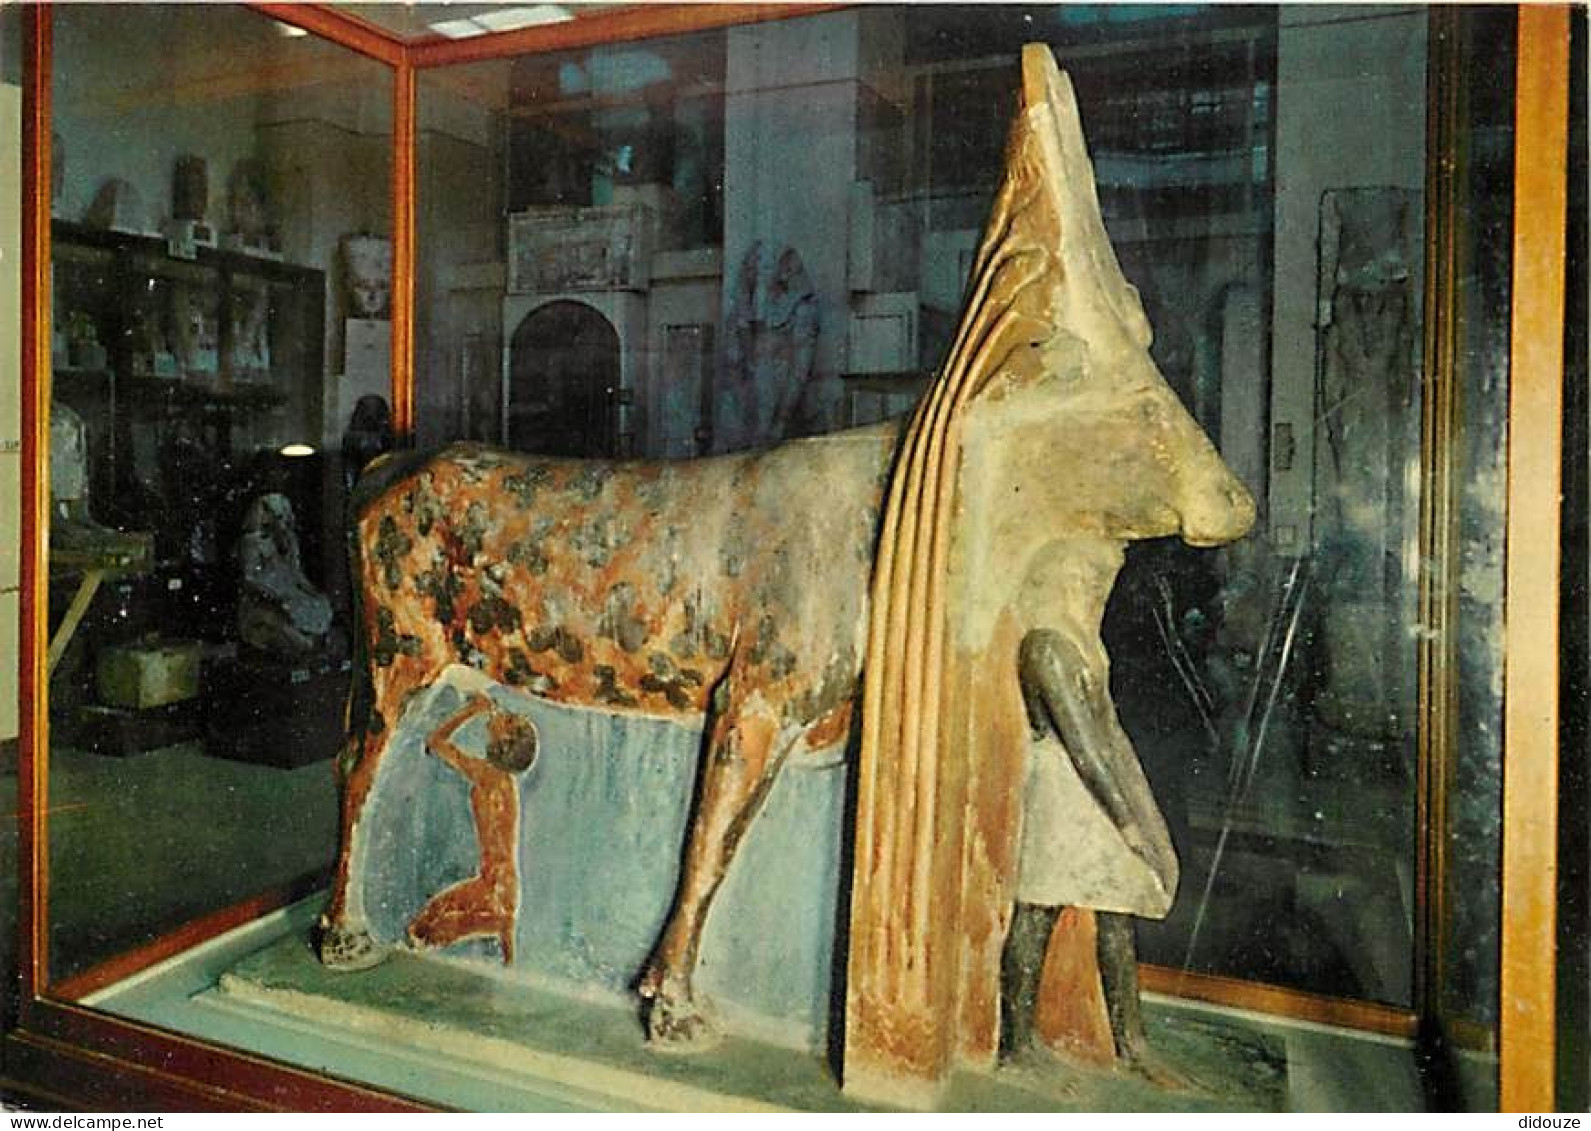 Egypte - Le Caire - Cairo - Musée Archéologique - Antiquité Egyptienne - King Amenhotep II Beneath The Hathor Cow - 1450 - Museen